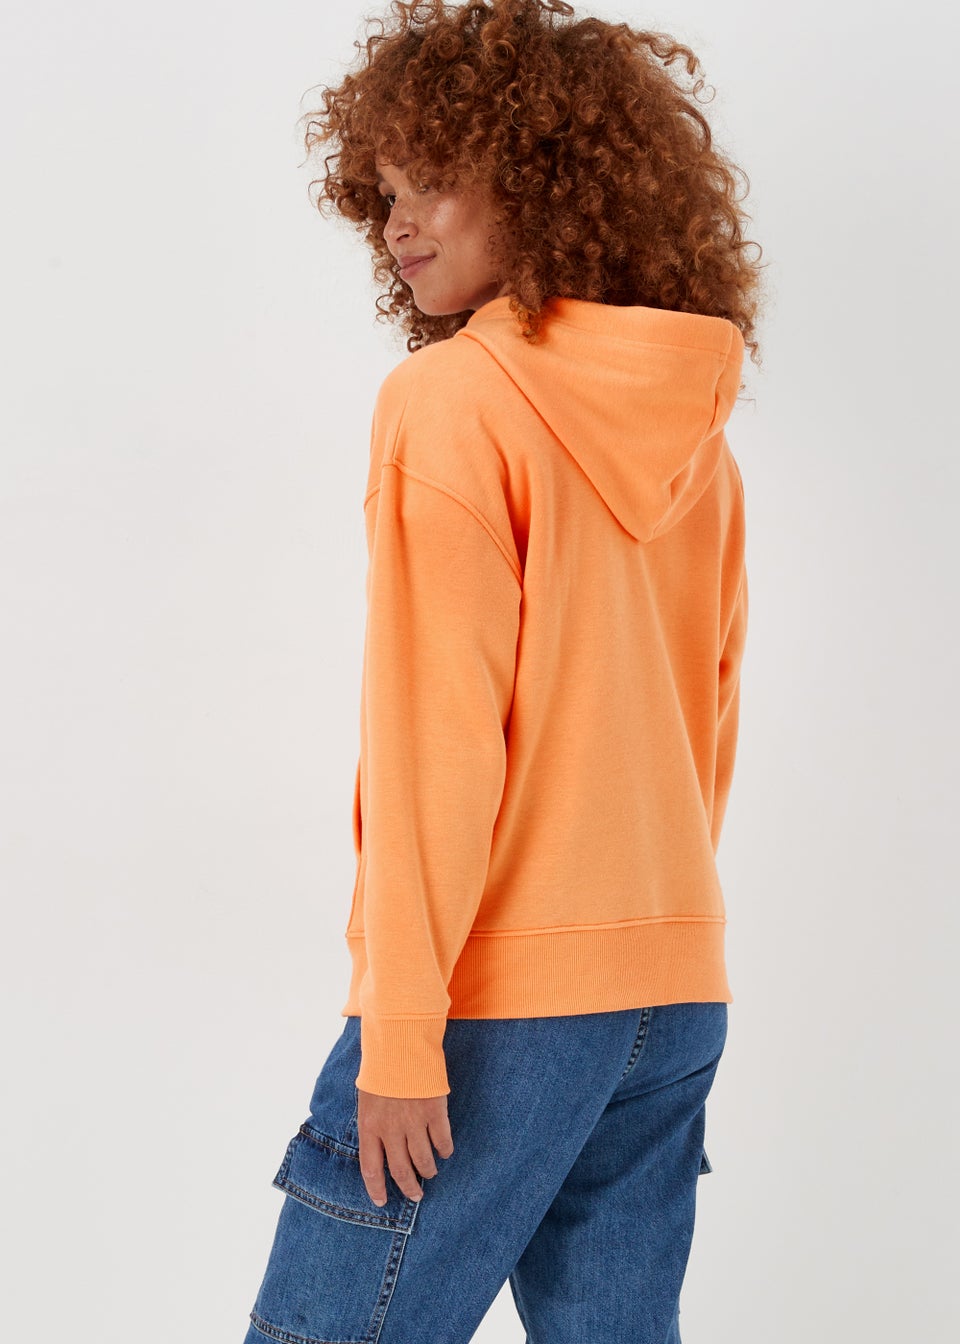 Women's Hoodies & Sweatshirts | Oversized & Zip Up – Matalan